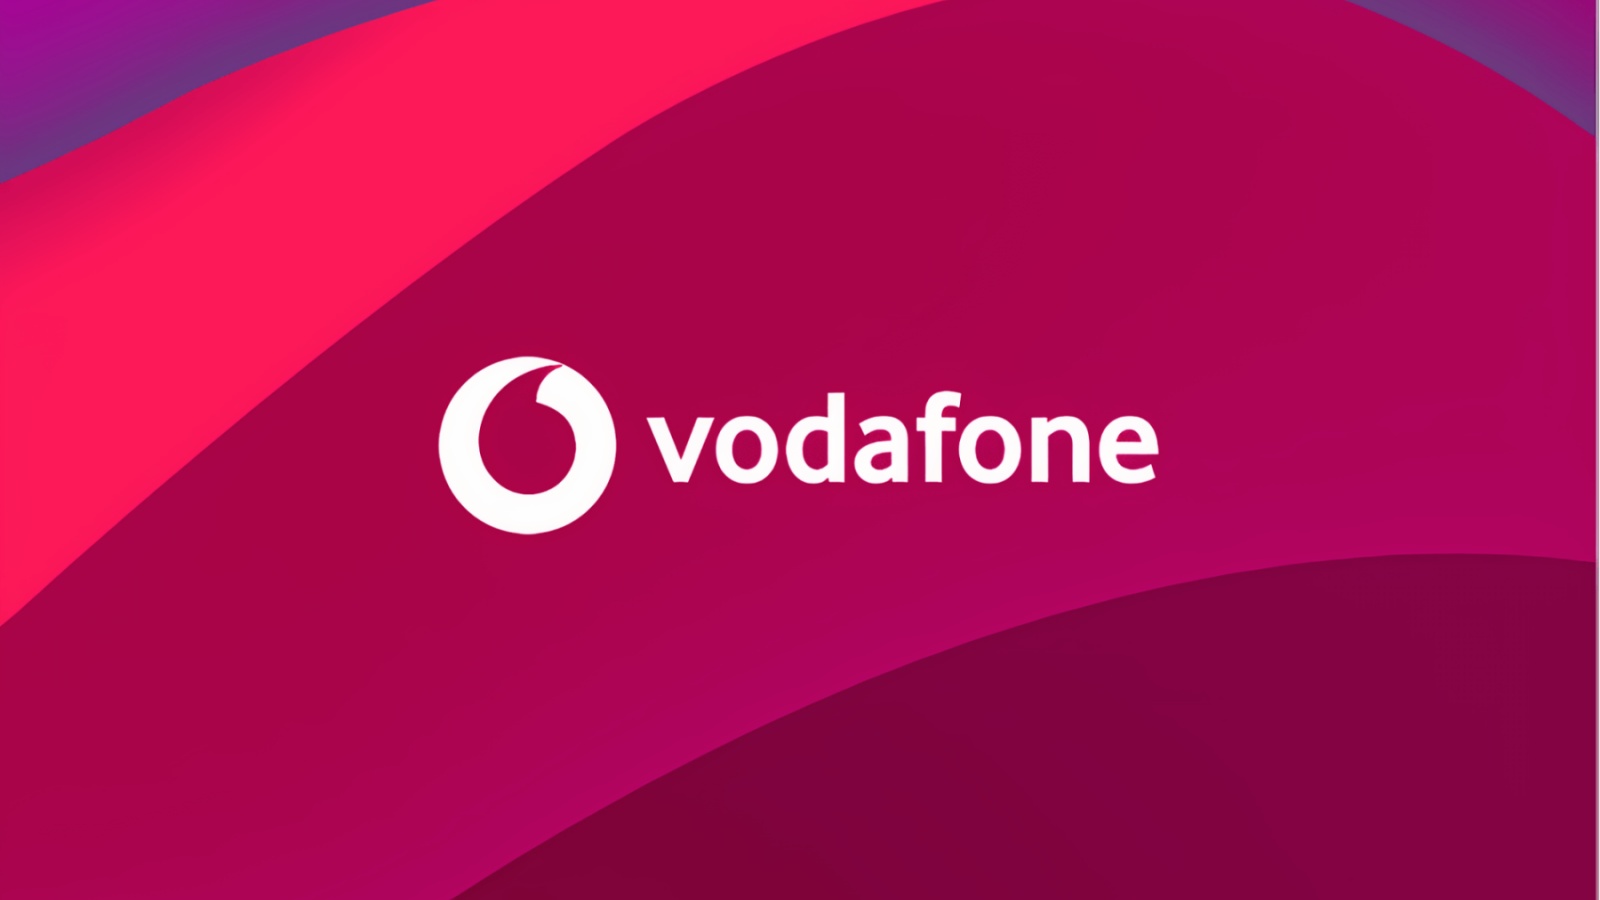 OFICJALNE Ogłoszenie Vodafone Zmiany klientów w Rumunii